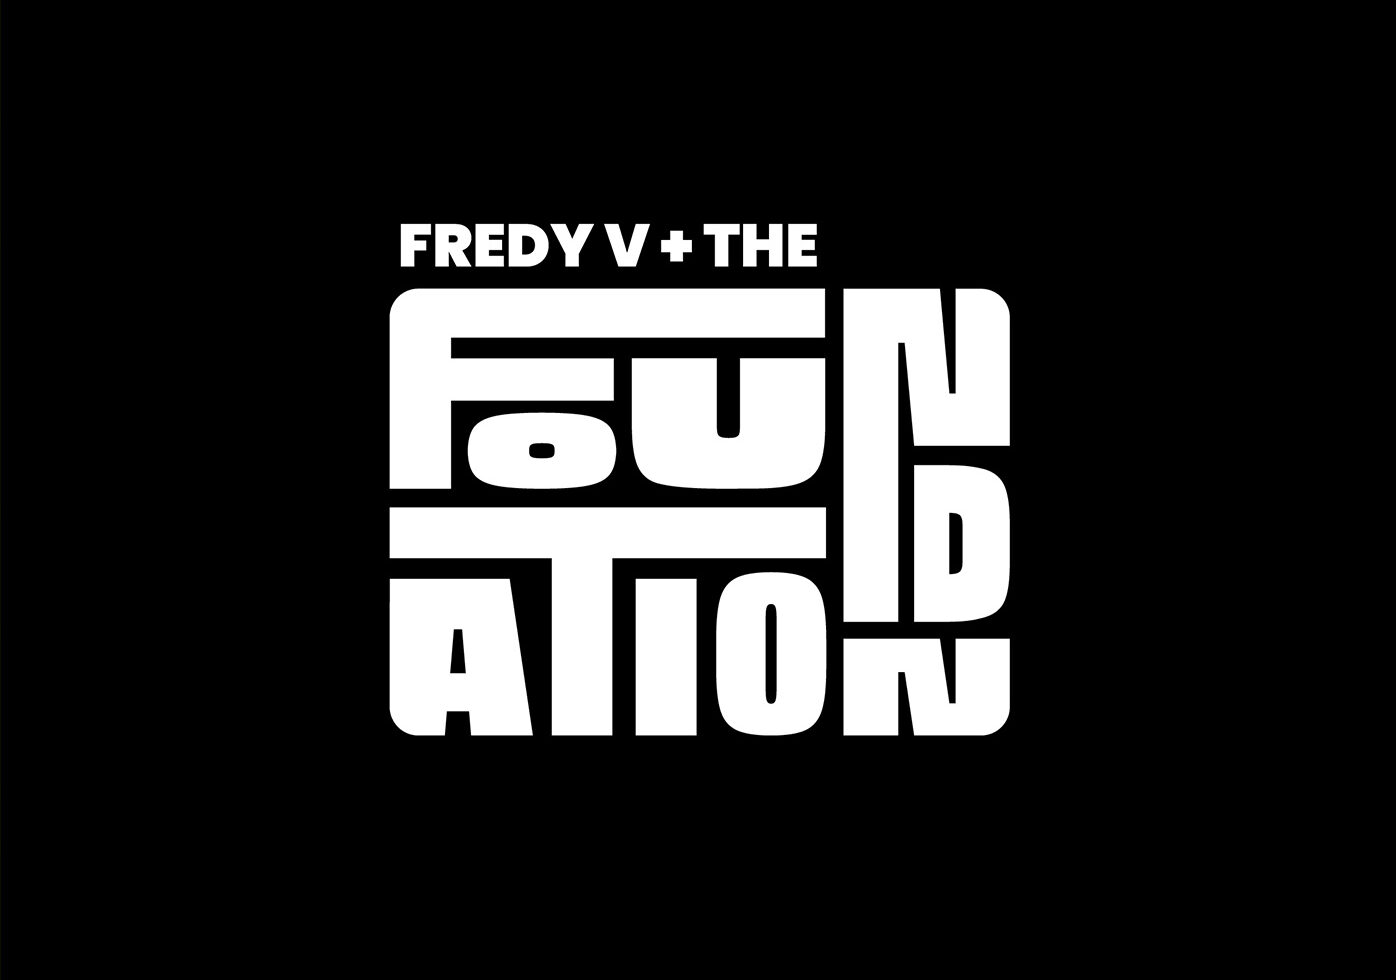 foundation fredy v logo